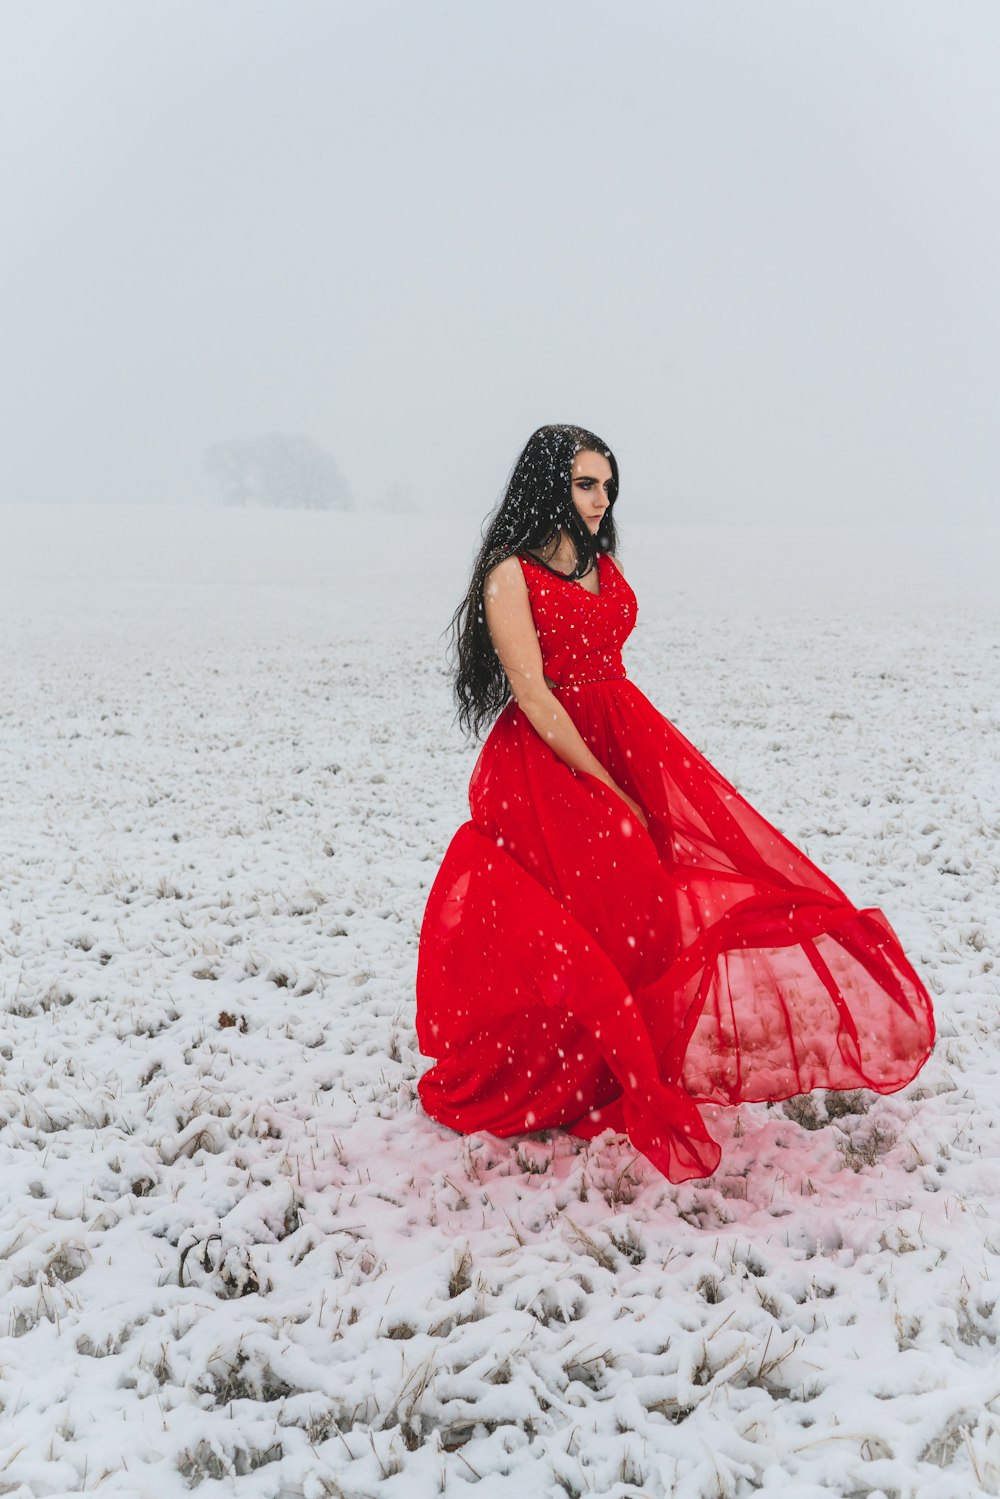 Una mujer con un vestido rojo en la nieve